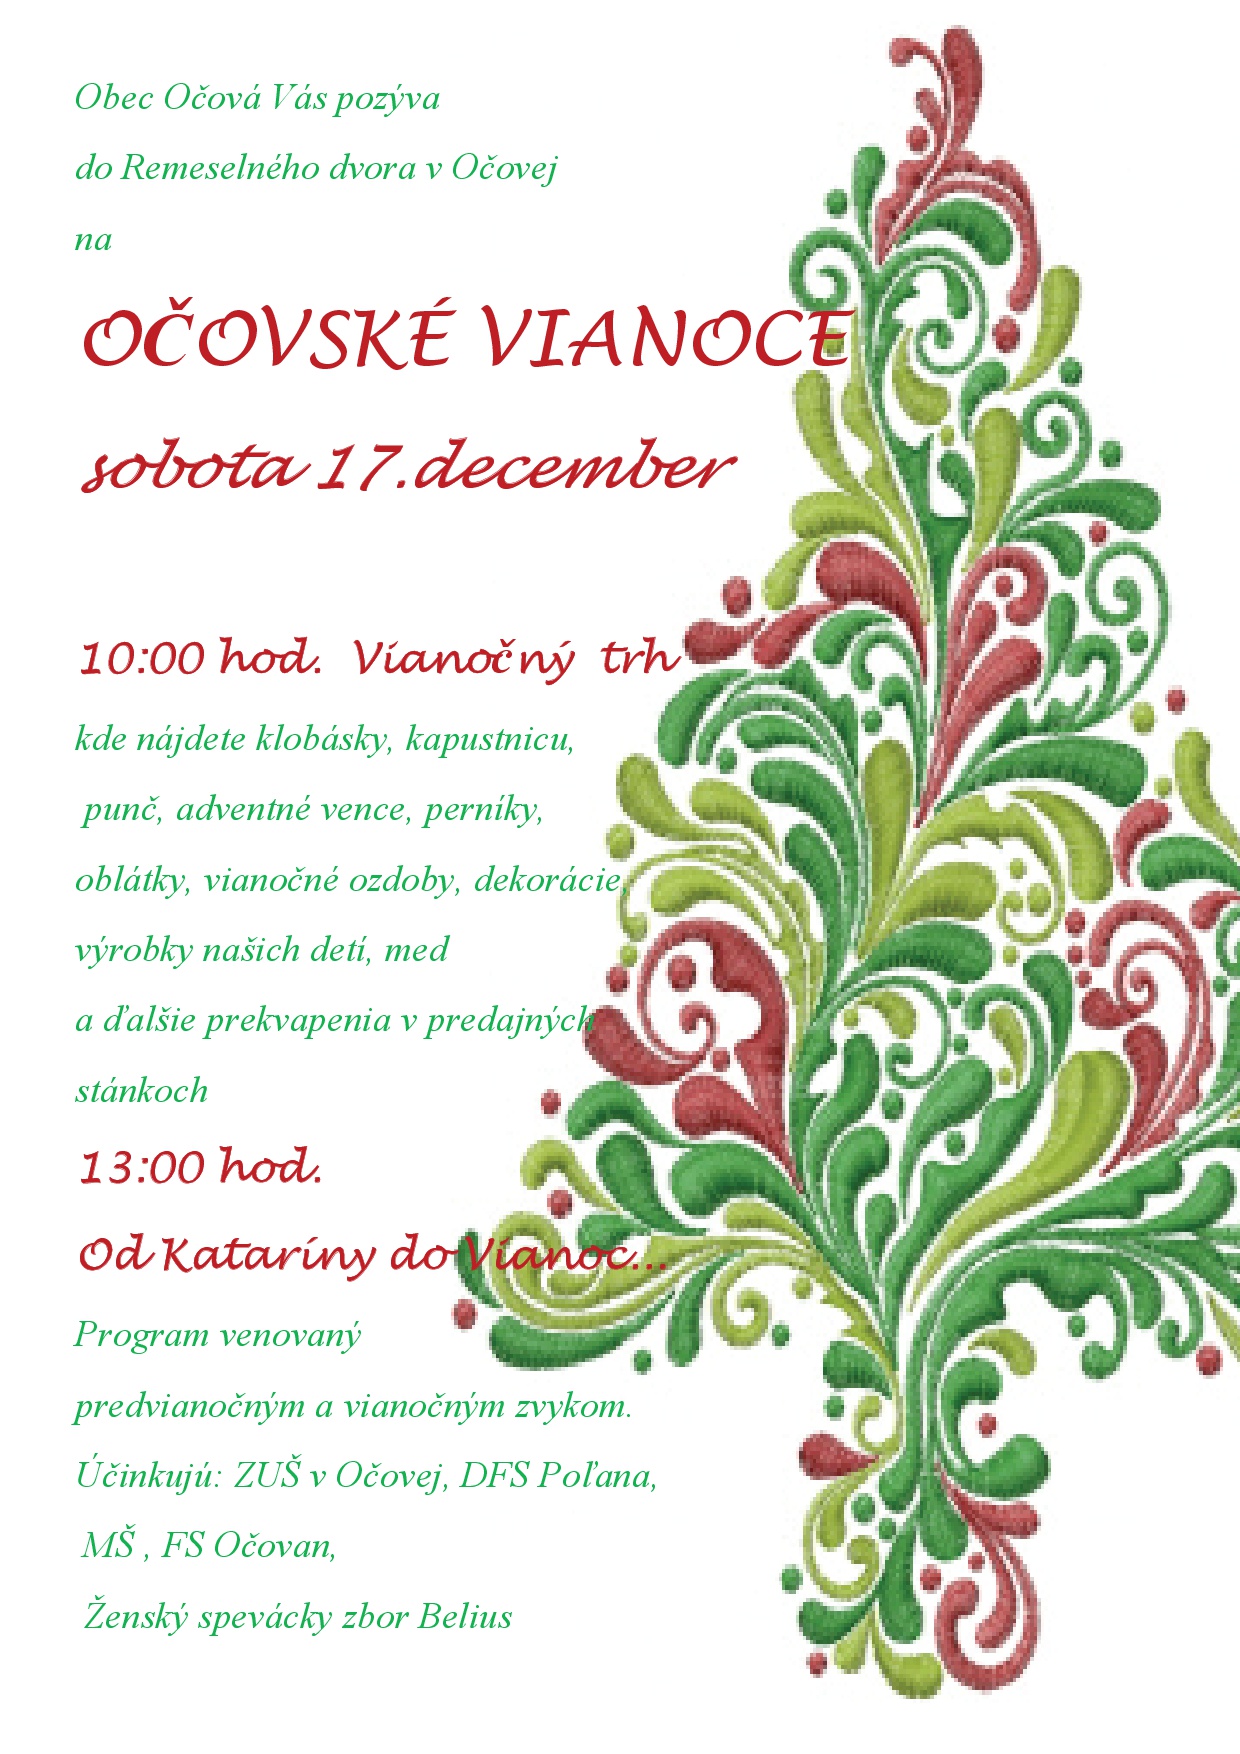 OOVSK VIANOCE - Vianon trh a Od Katarny do Vianoc Oov 2016